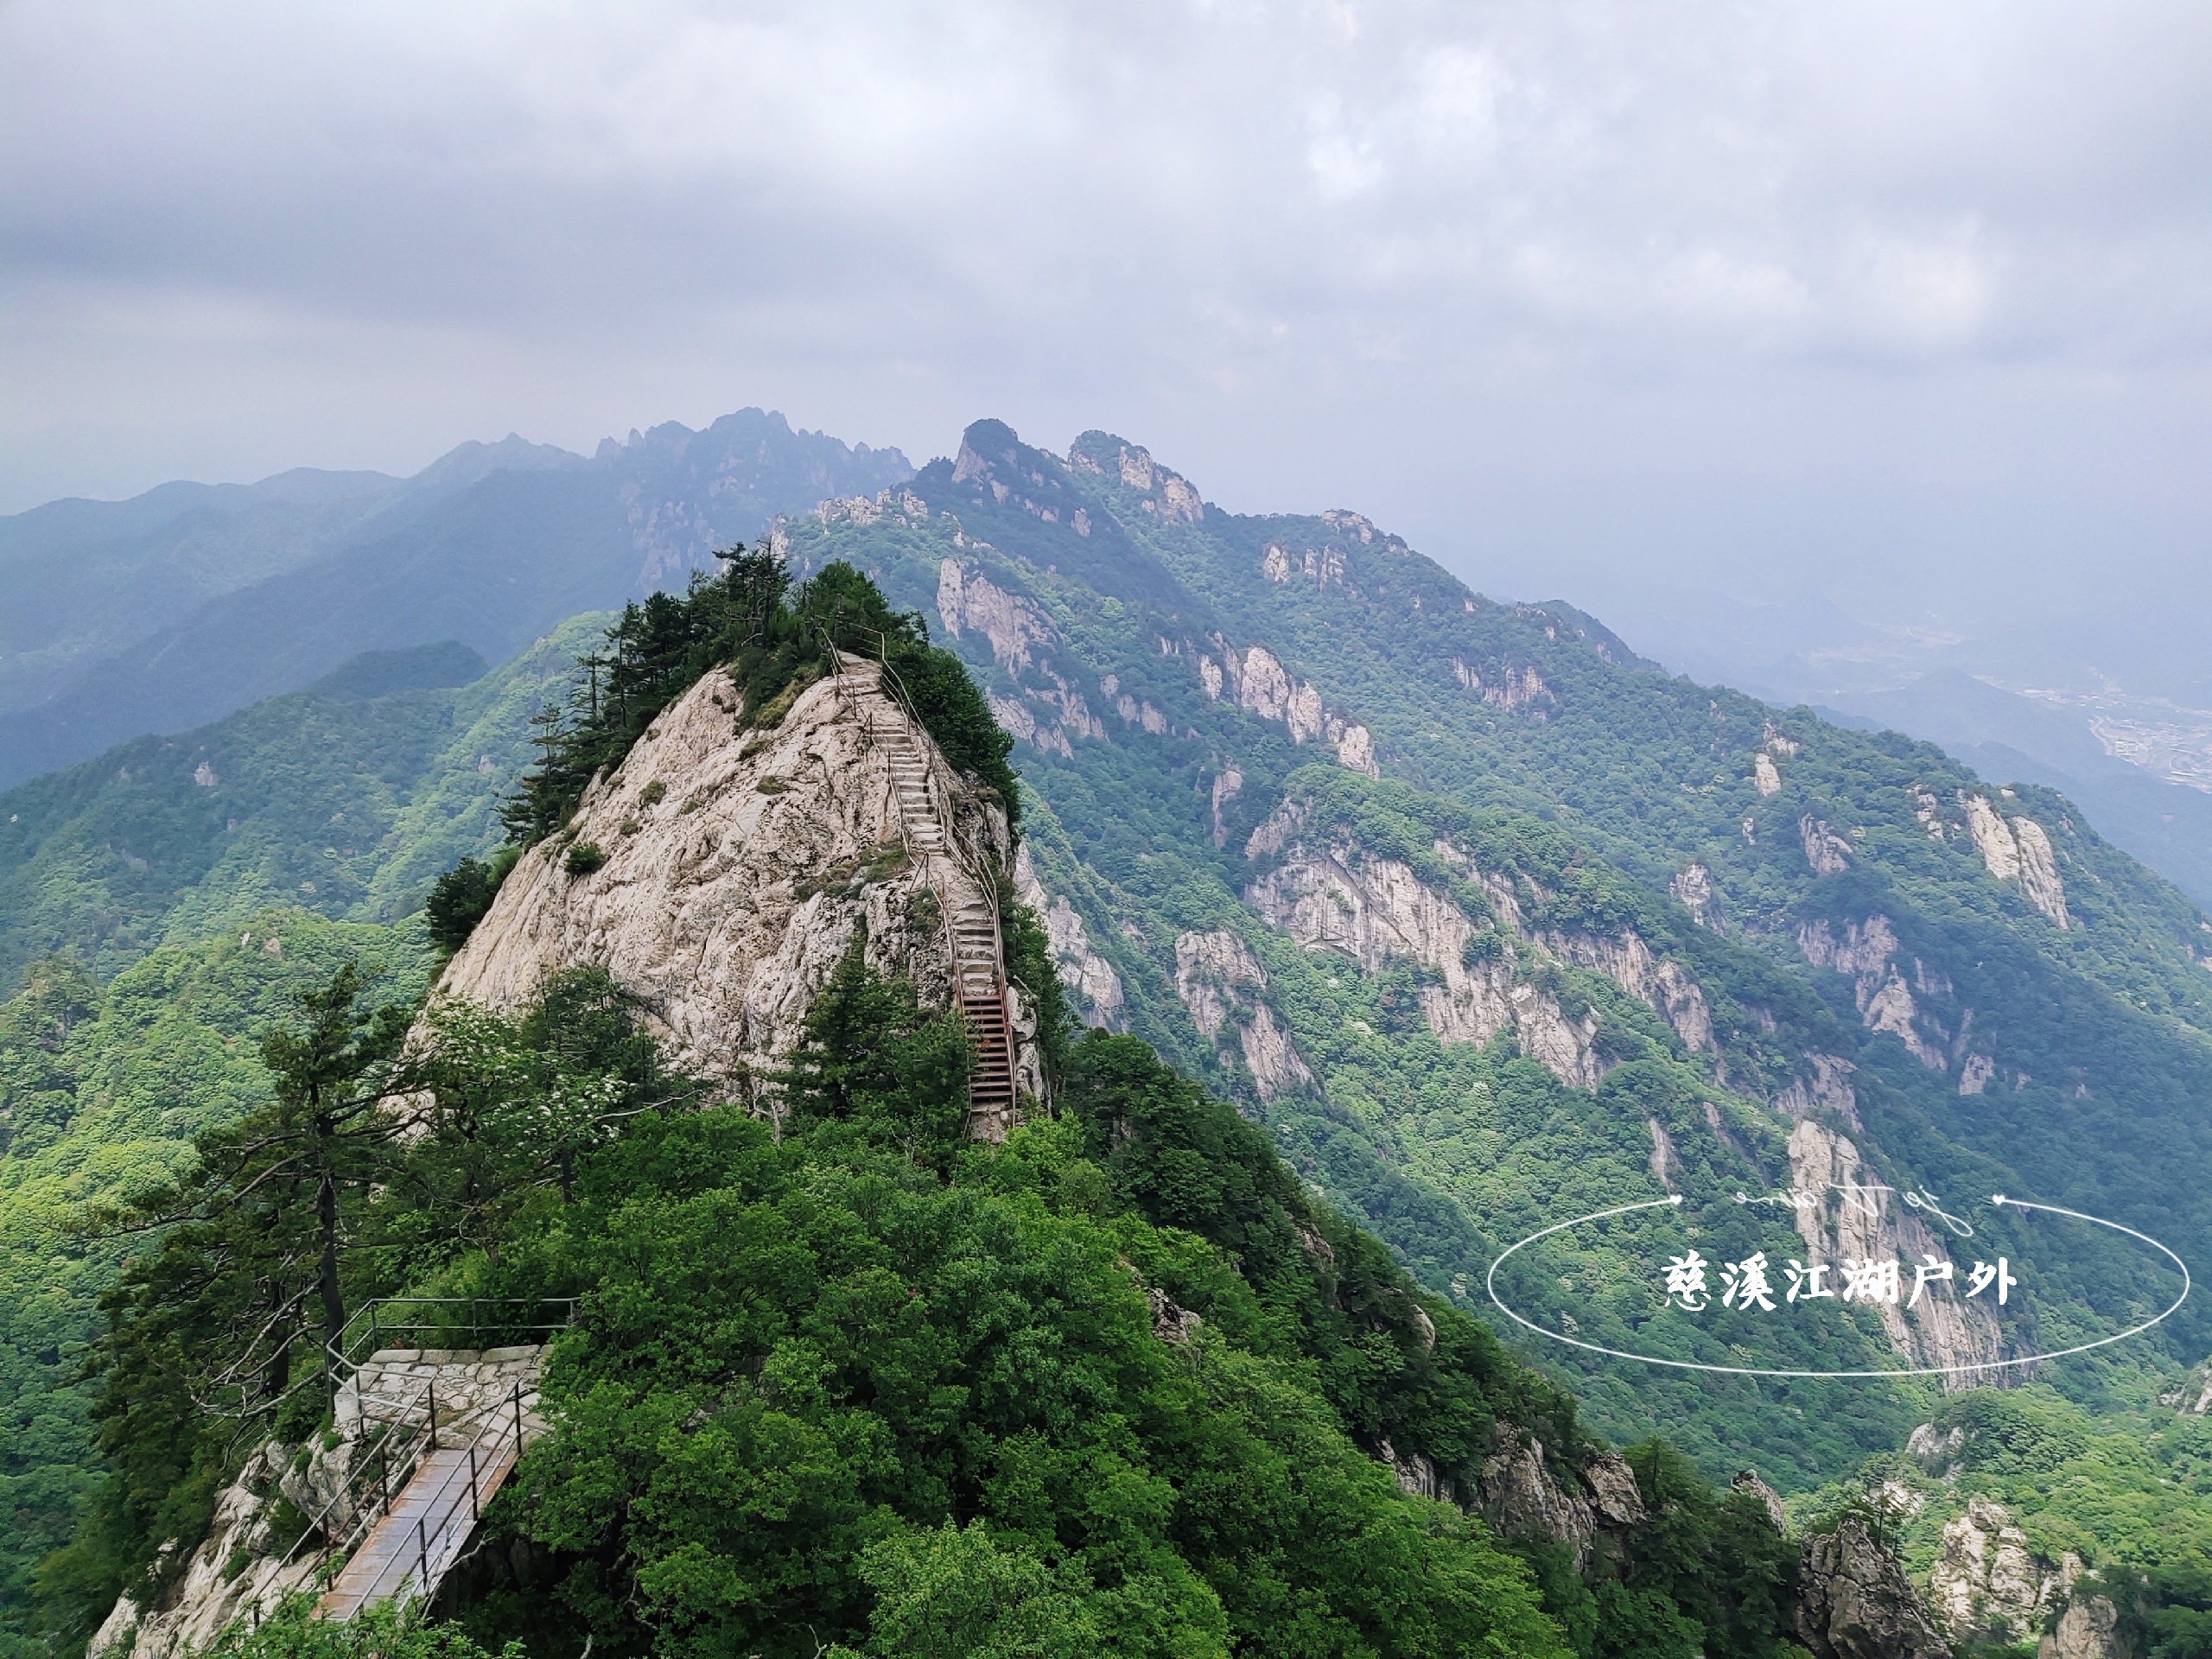 被低估了的老君山，十里画屏峰林极美，但谁说只能坐索道上山？